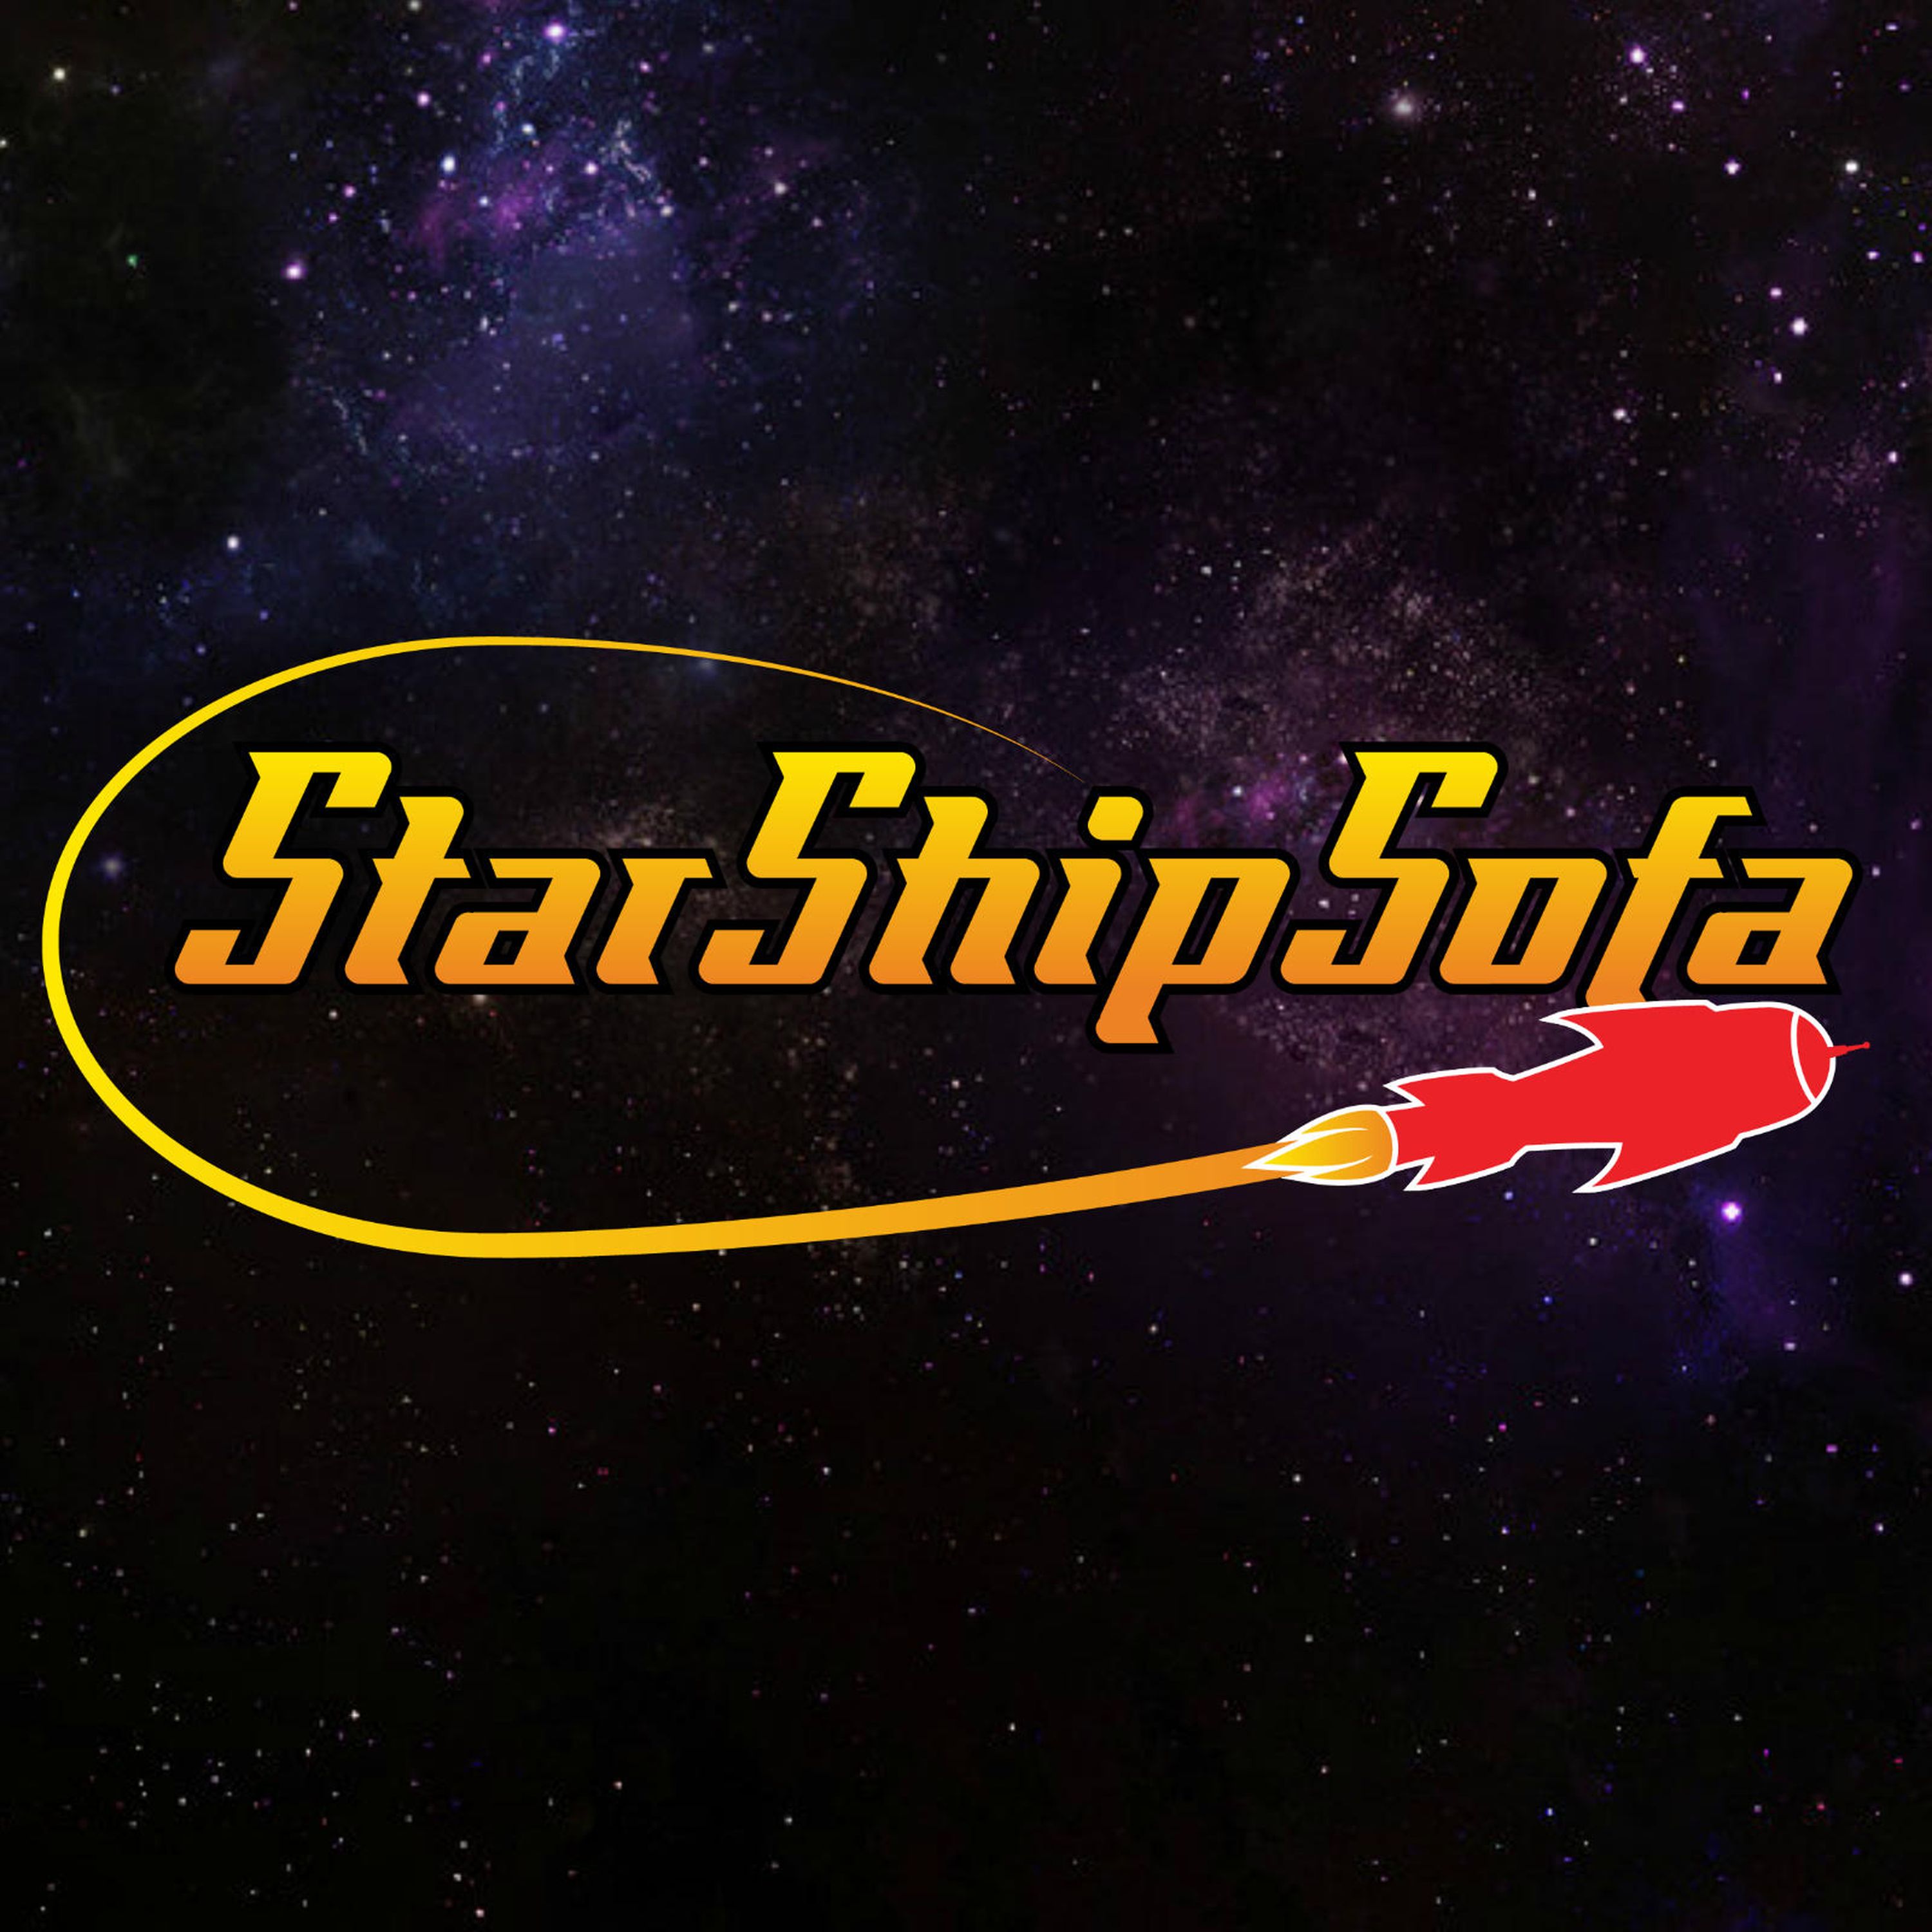 StarShipSofa No 577 Michael Ezell